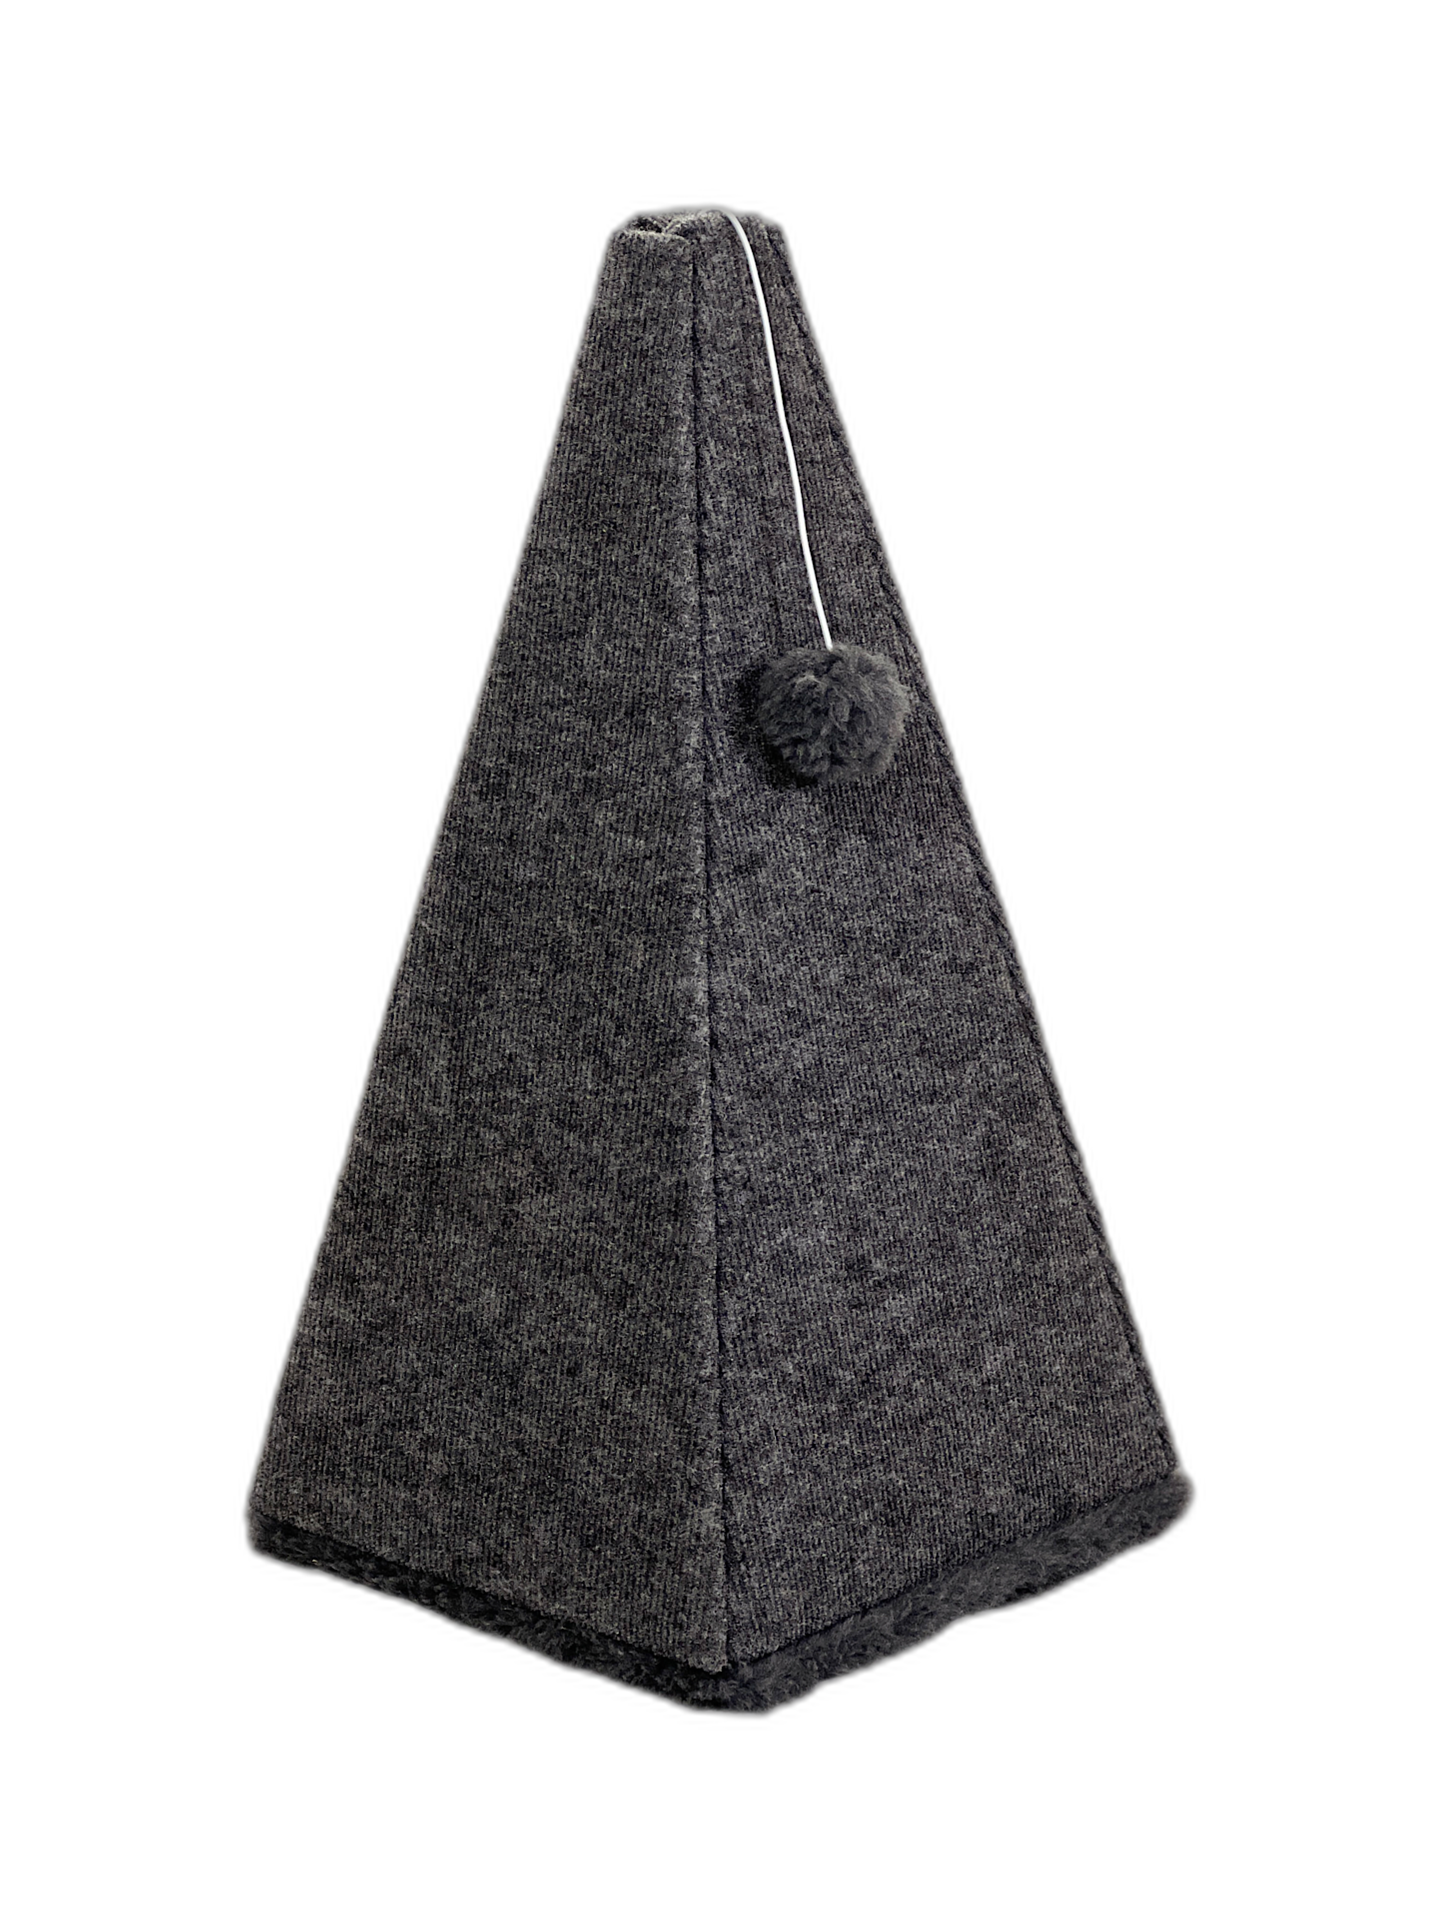 Когтетоточка для кошек "Пирамида", высота 60 см